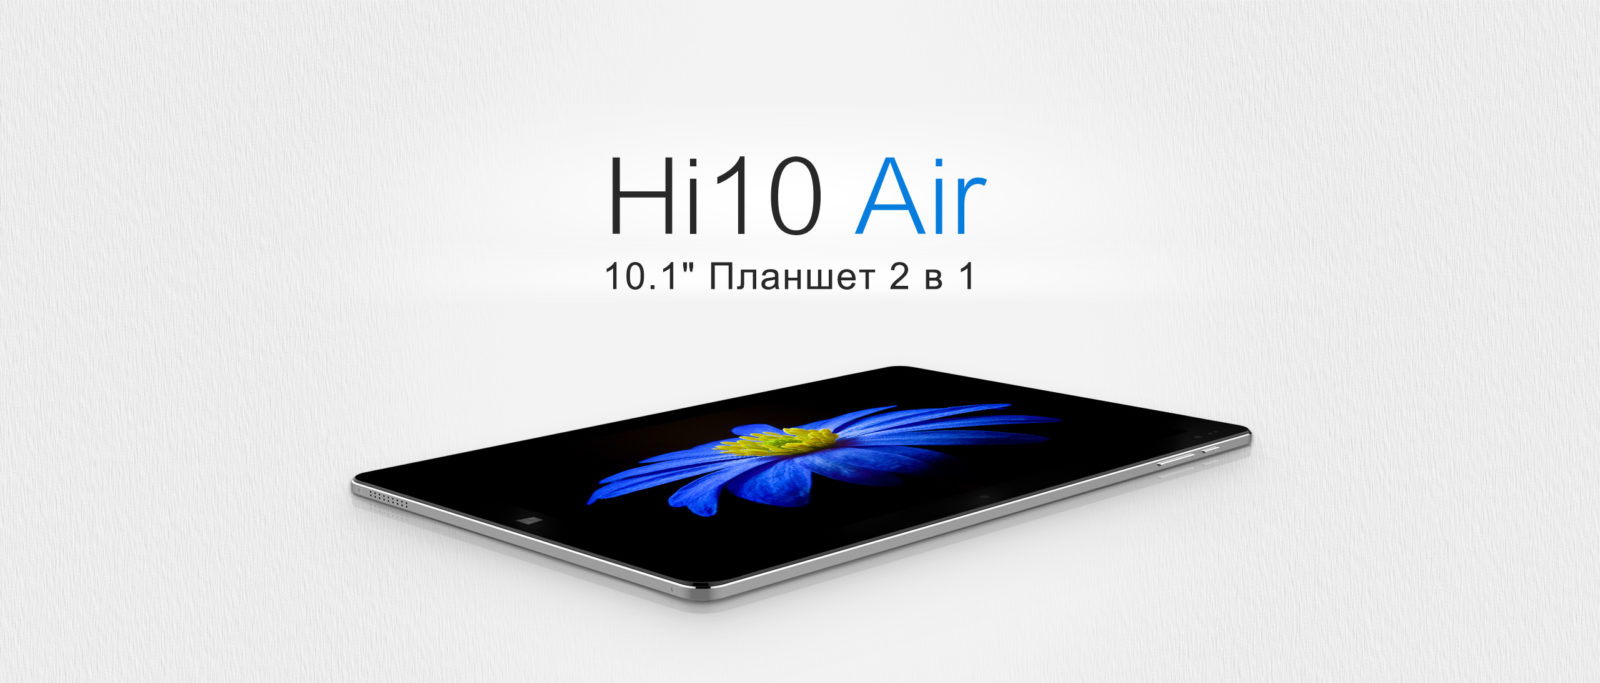 Новый планшет Chuwi Hi10 Air поддерживает клавиатуру и быструю зарядку